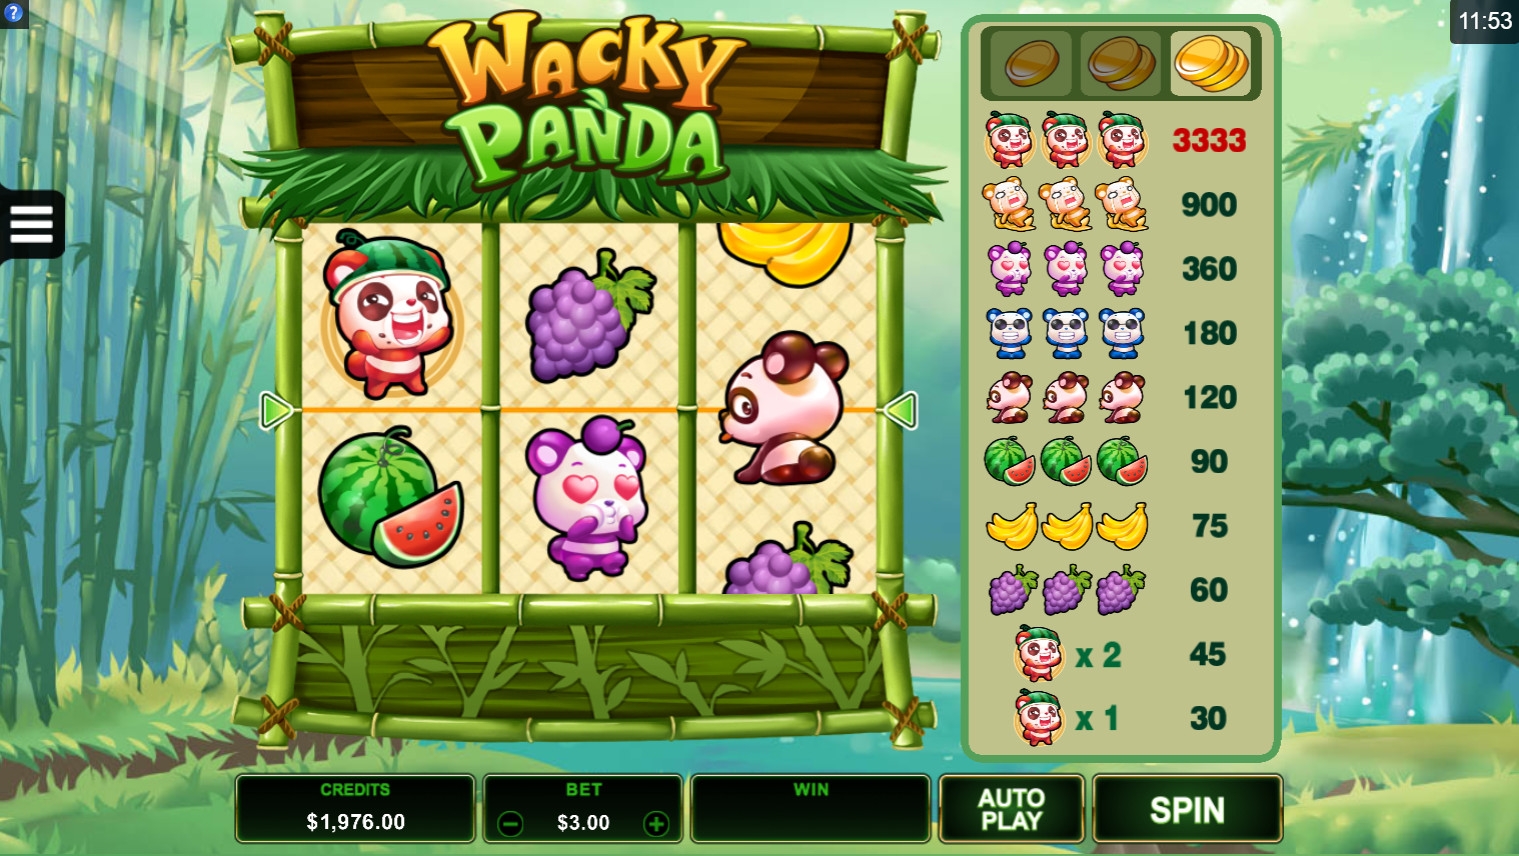 Wacky Panda (Wacky Panda) from category Slots